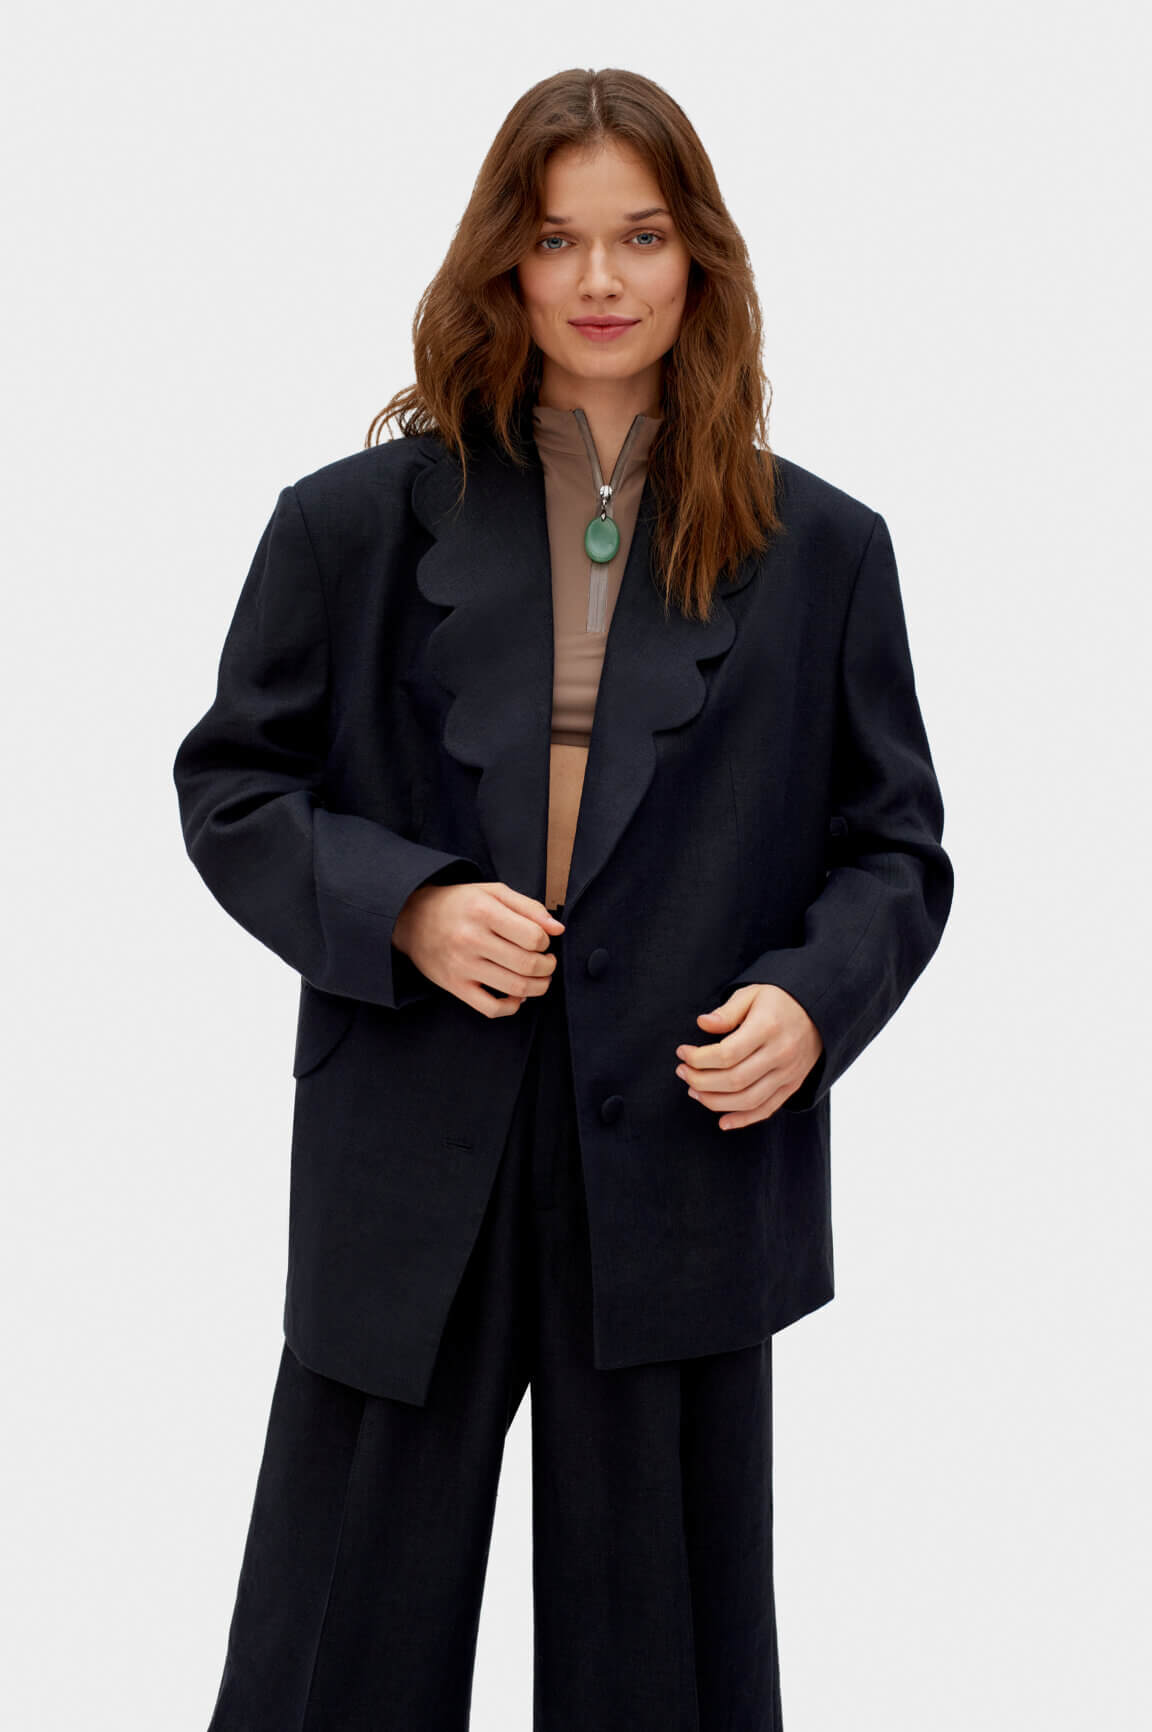 Black blazer | Dynasty women's jacket by Sleeper